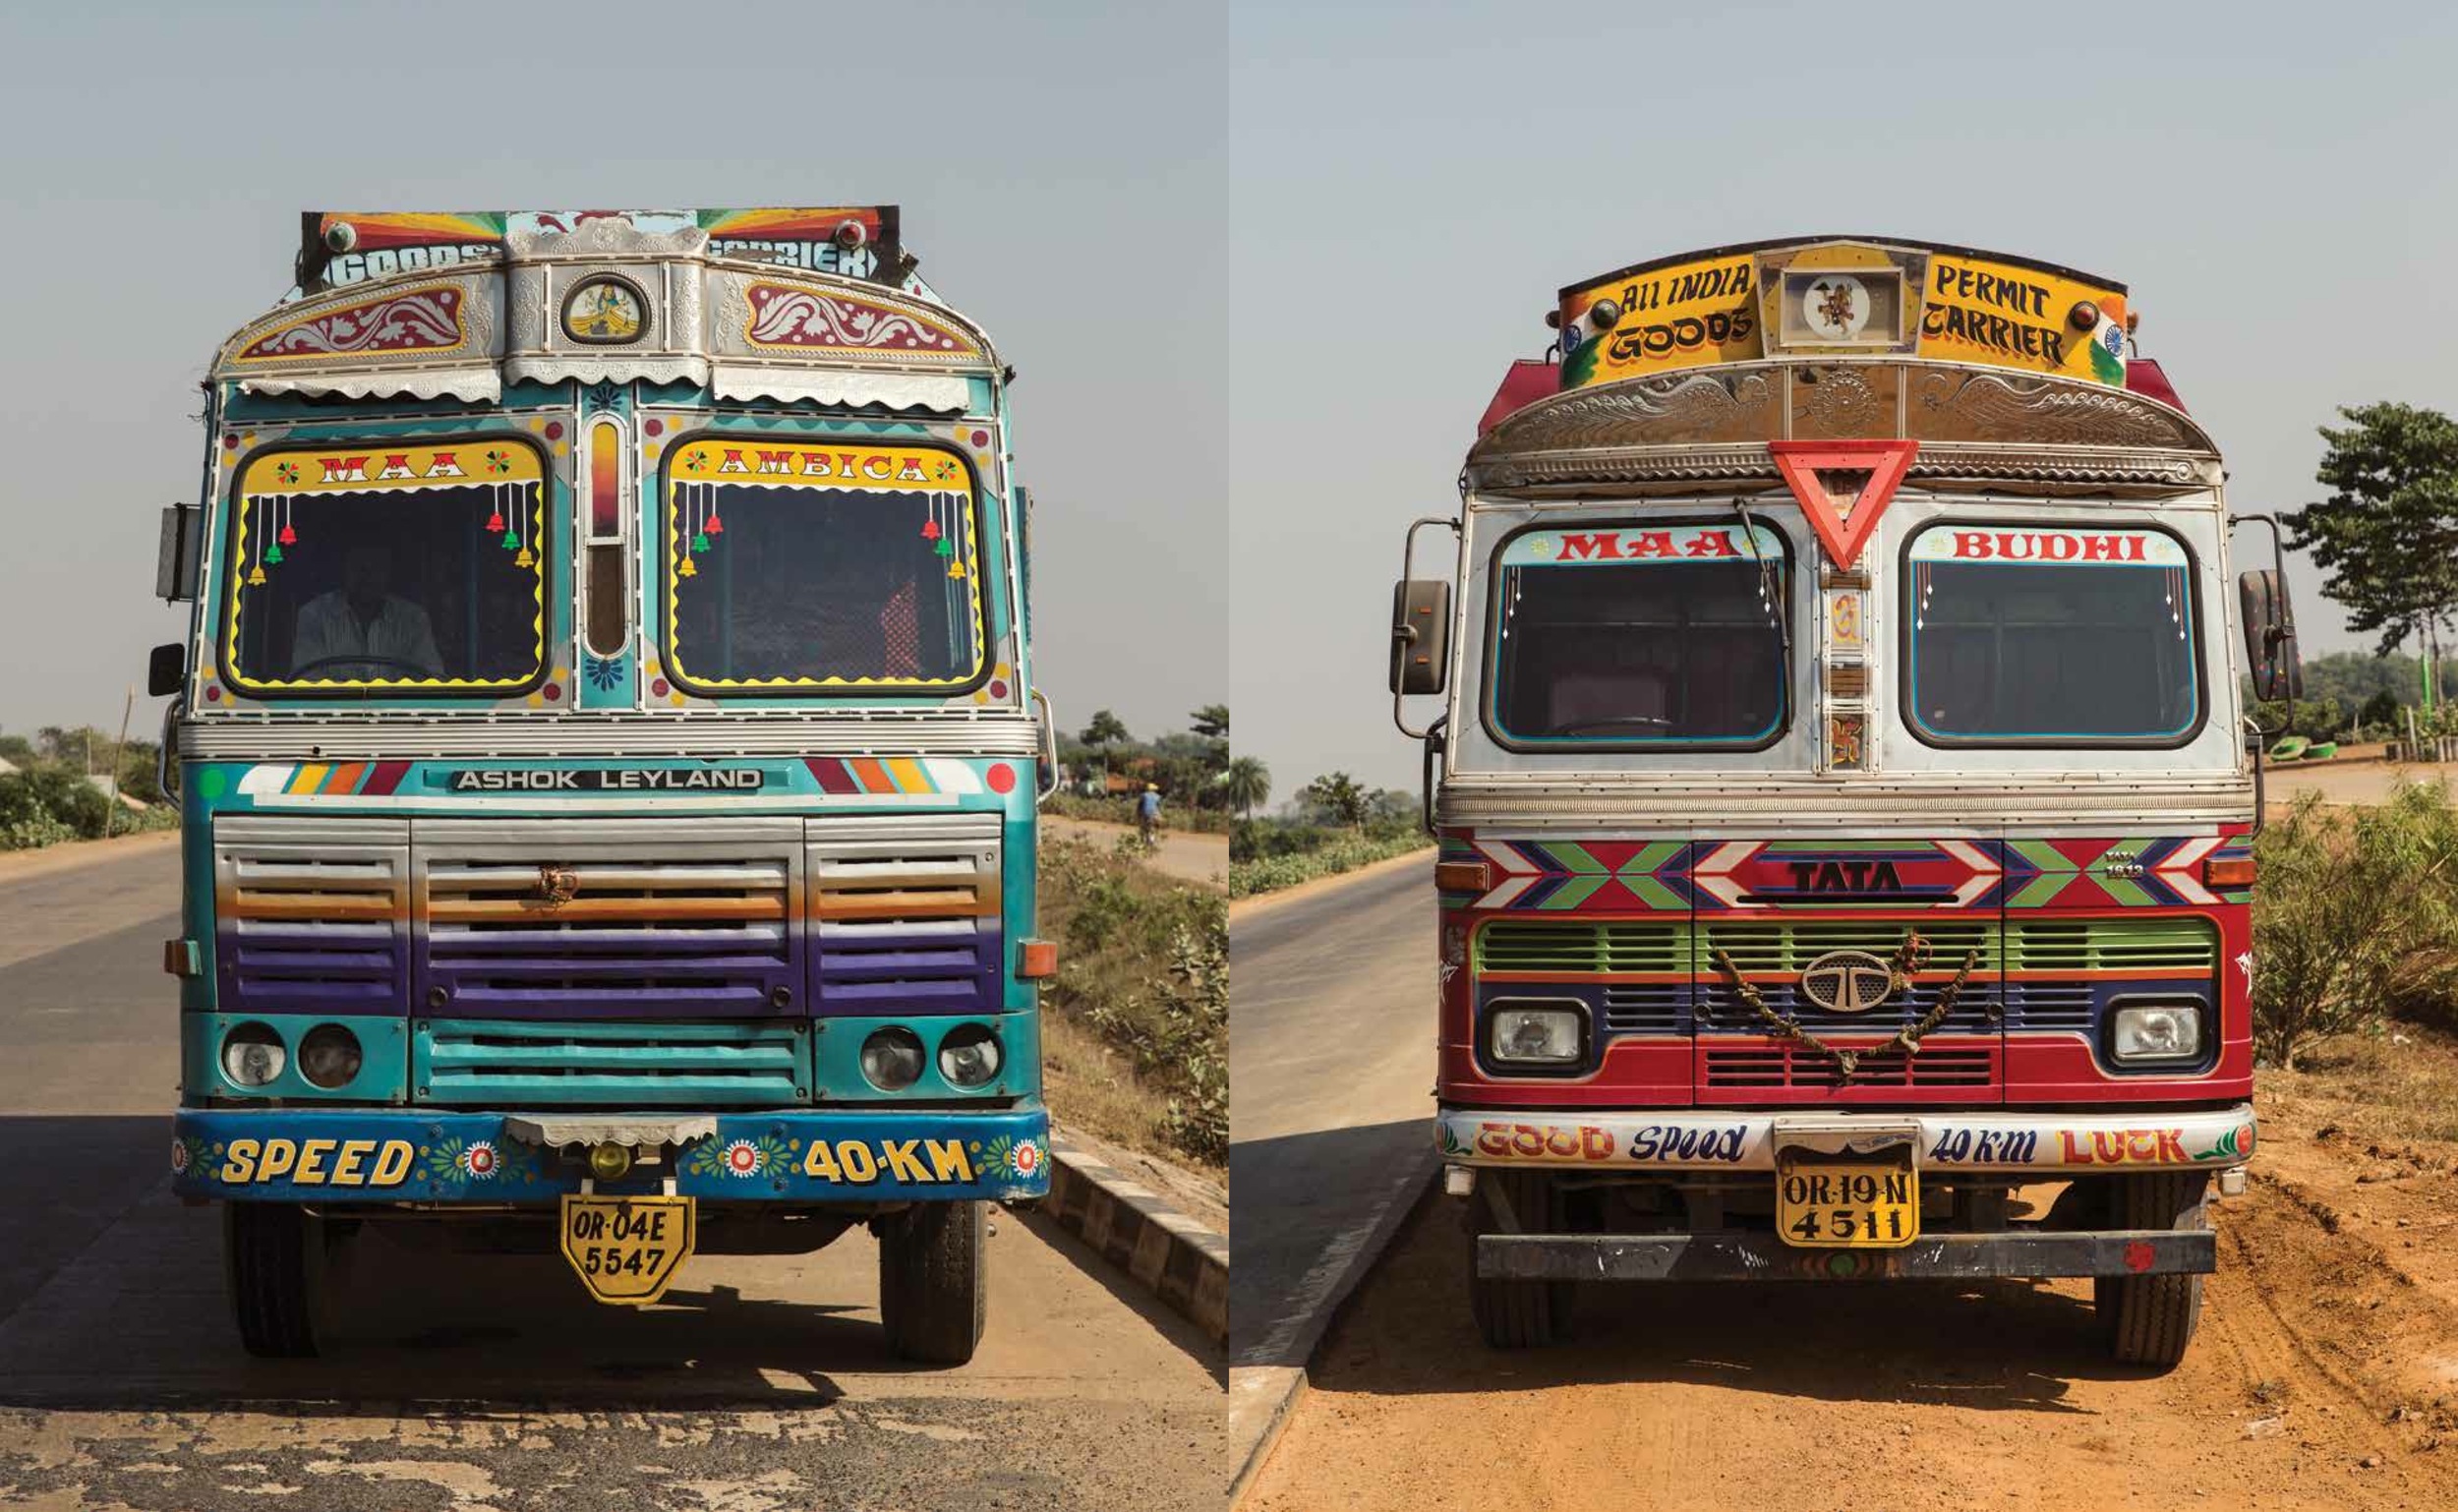 Les décors fantastiques des camions en inde